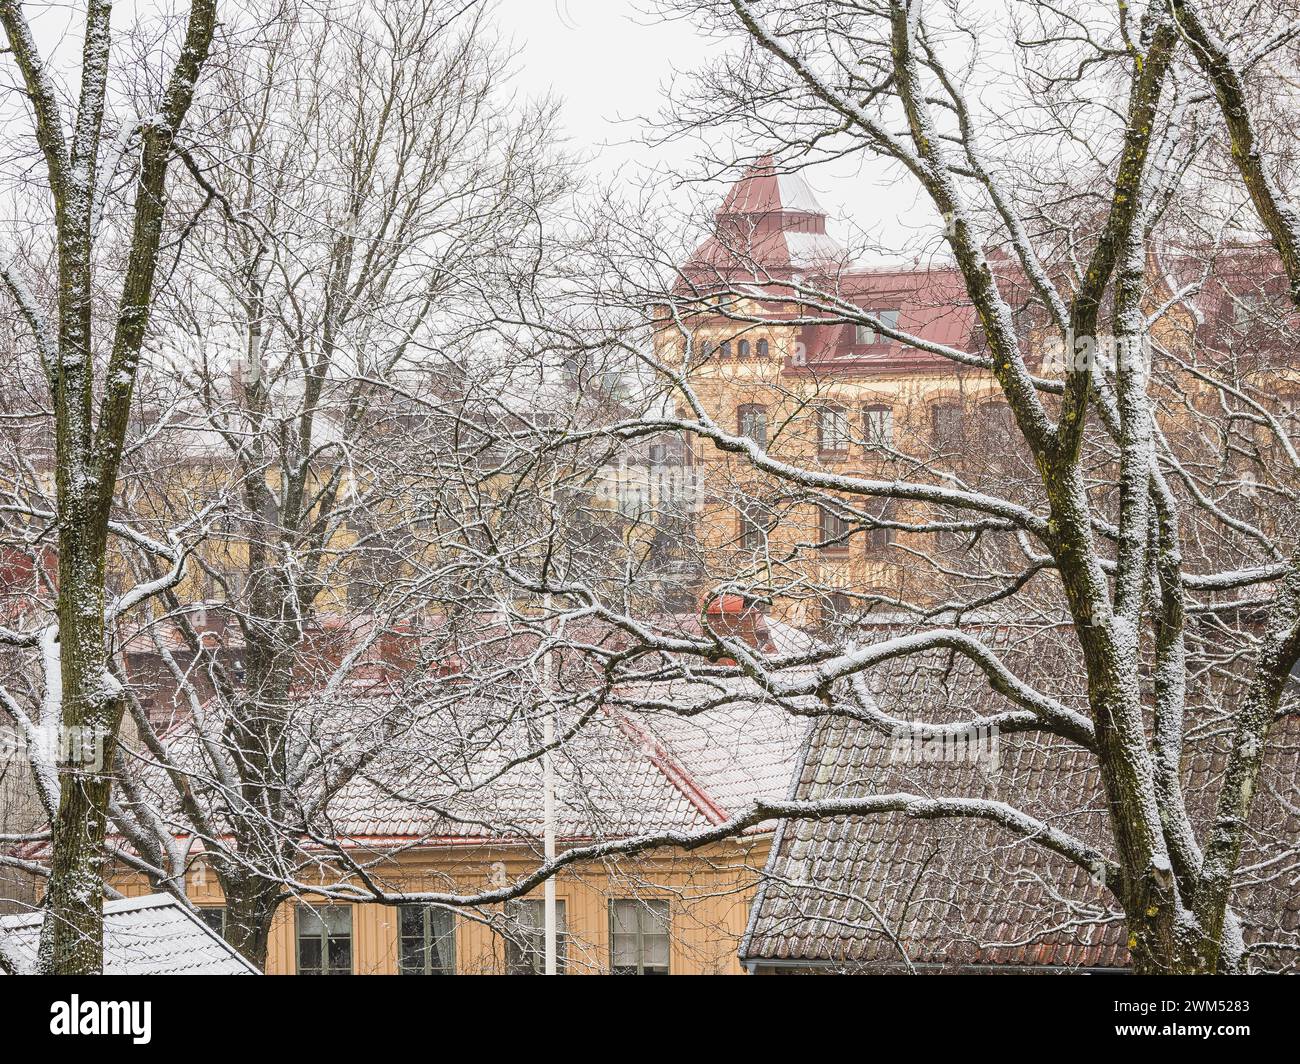 Une scène hivernale sereine à Gothenburg, où la neige tombe doucement sur les branches nues des arbres, couvrant les toits des bâtiments traditionnels suédois. L'AT Banque D'Images